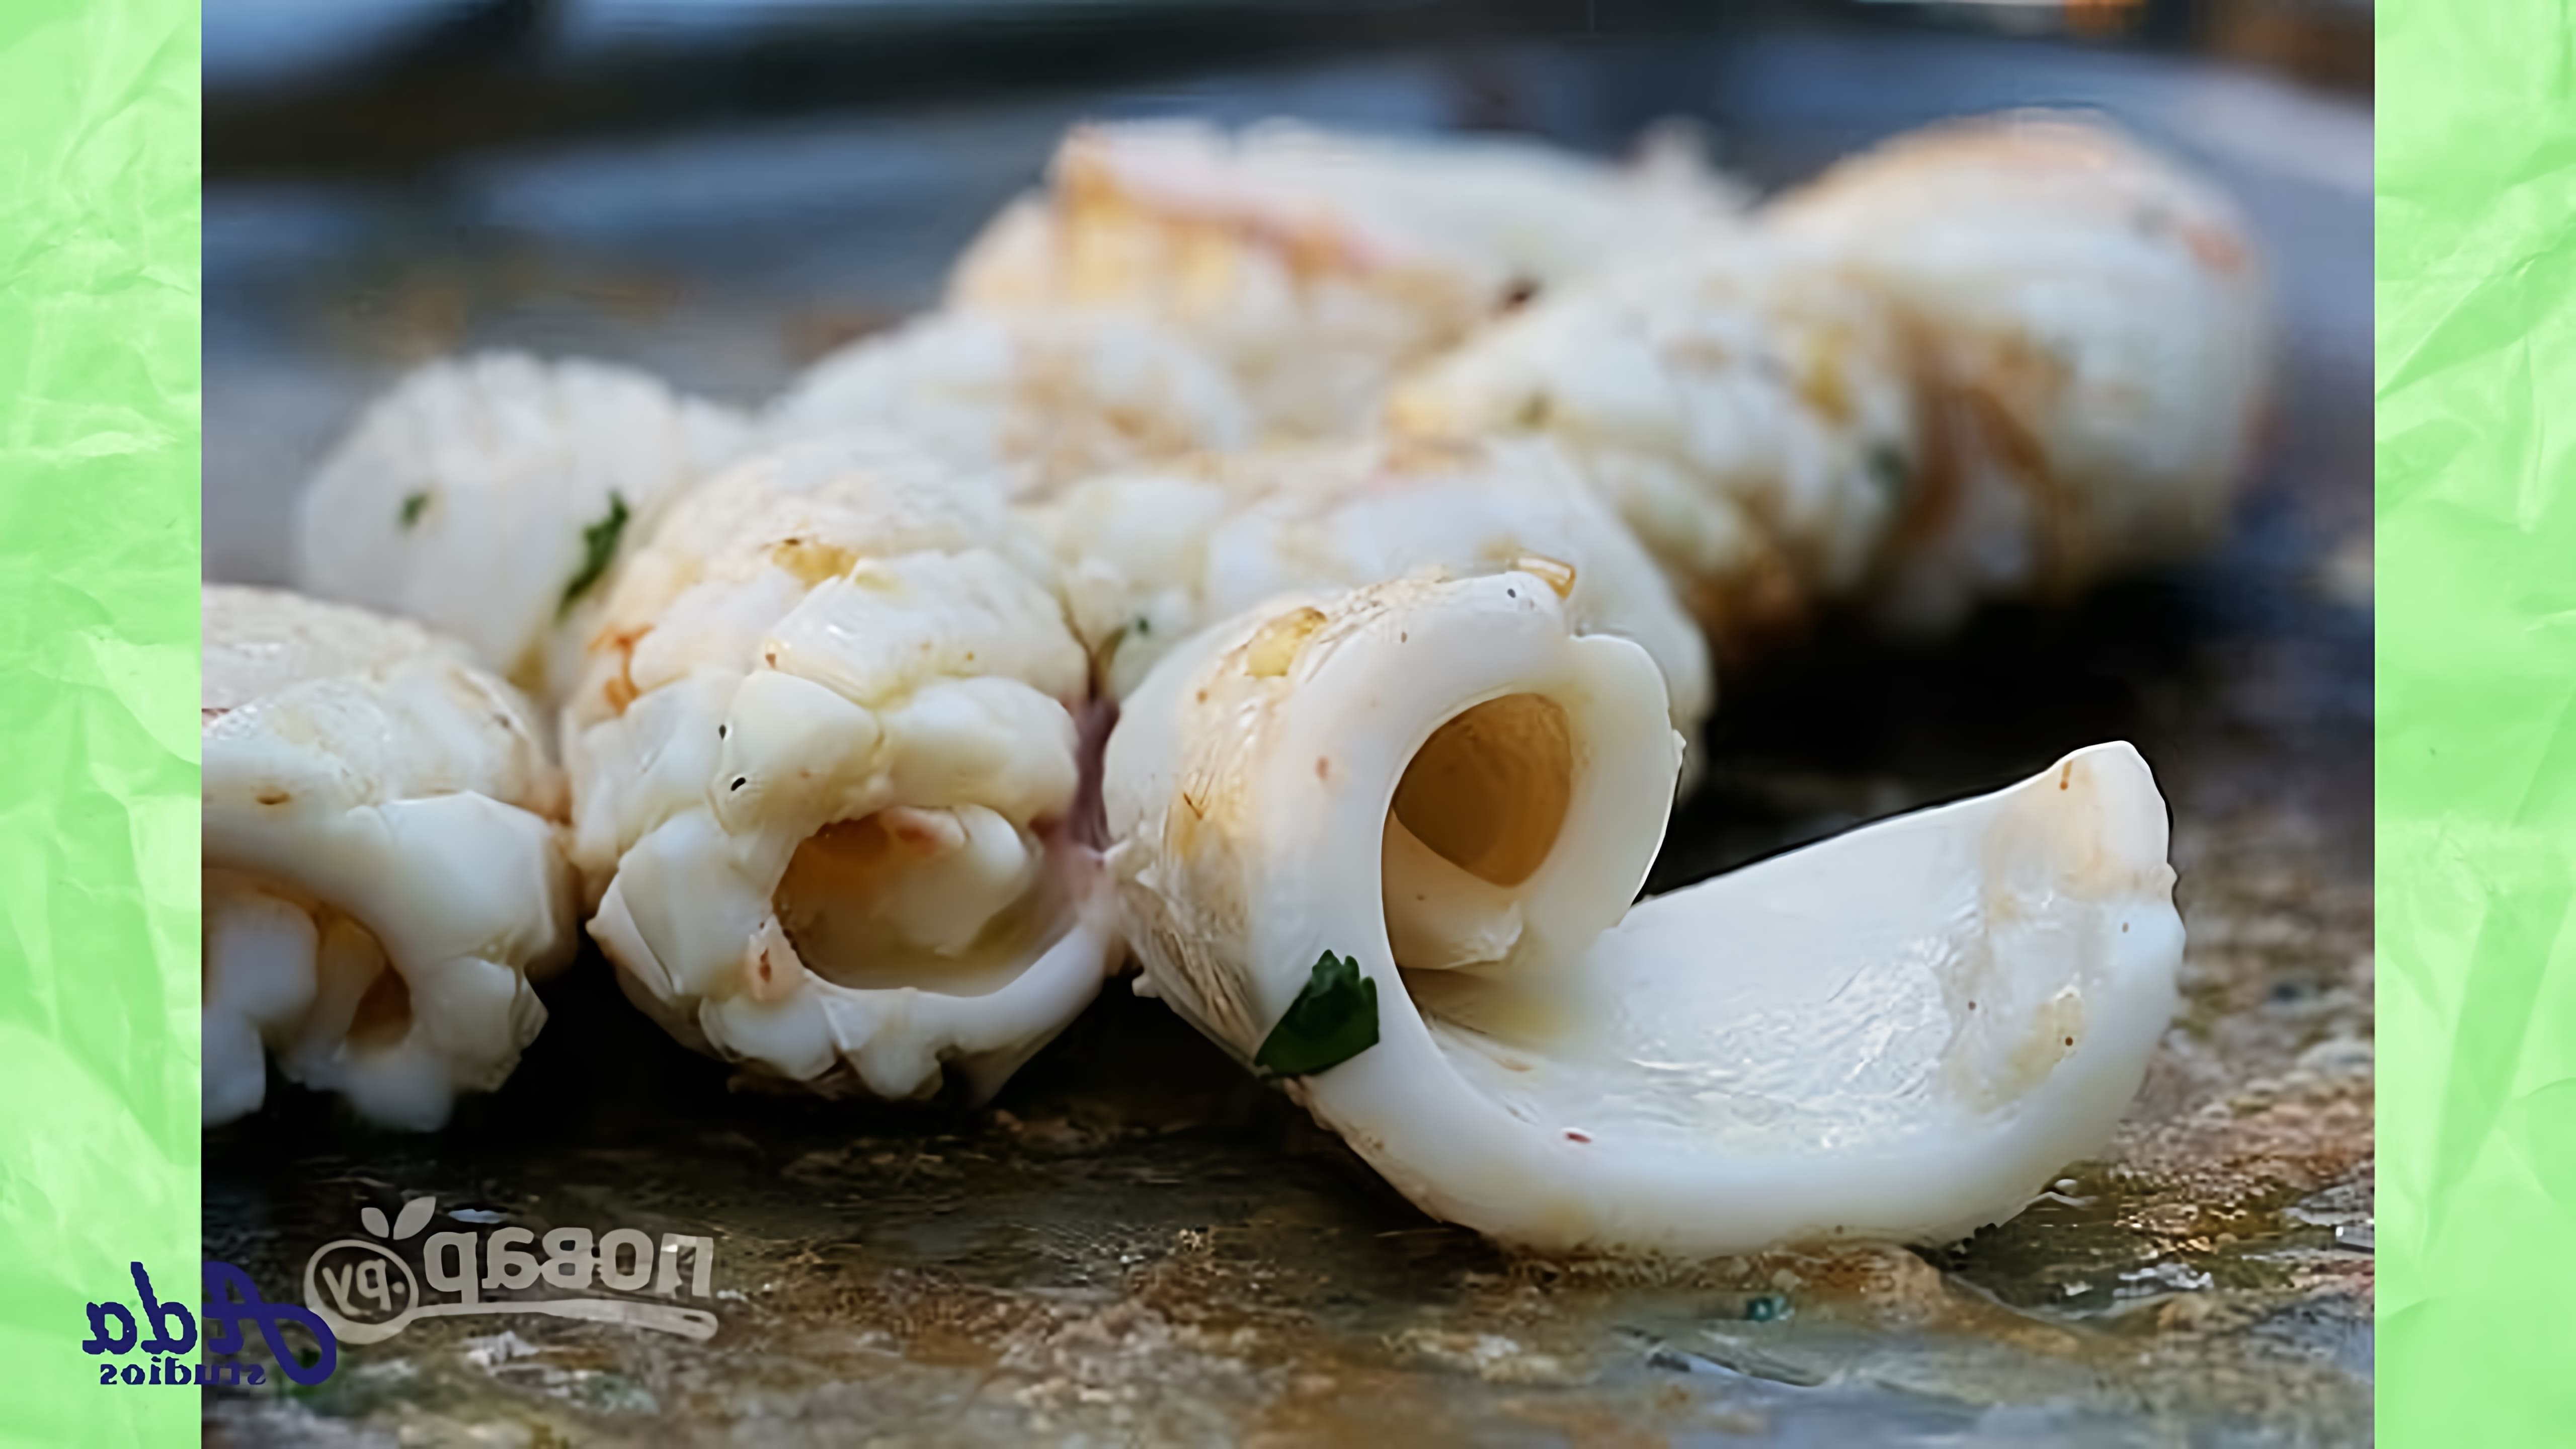 В этом видео демонстрируется рецепт приготовления филе кальмара в духовке